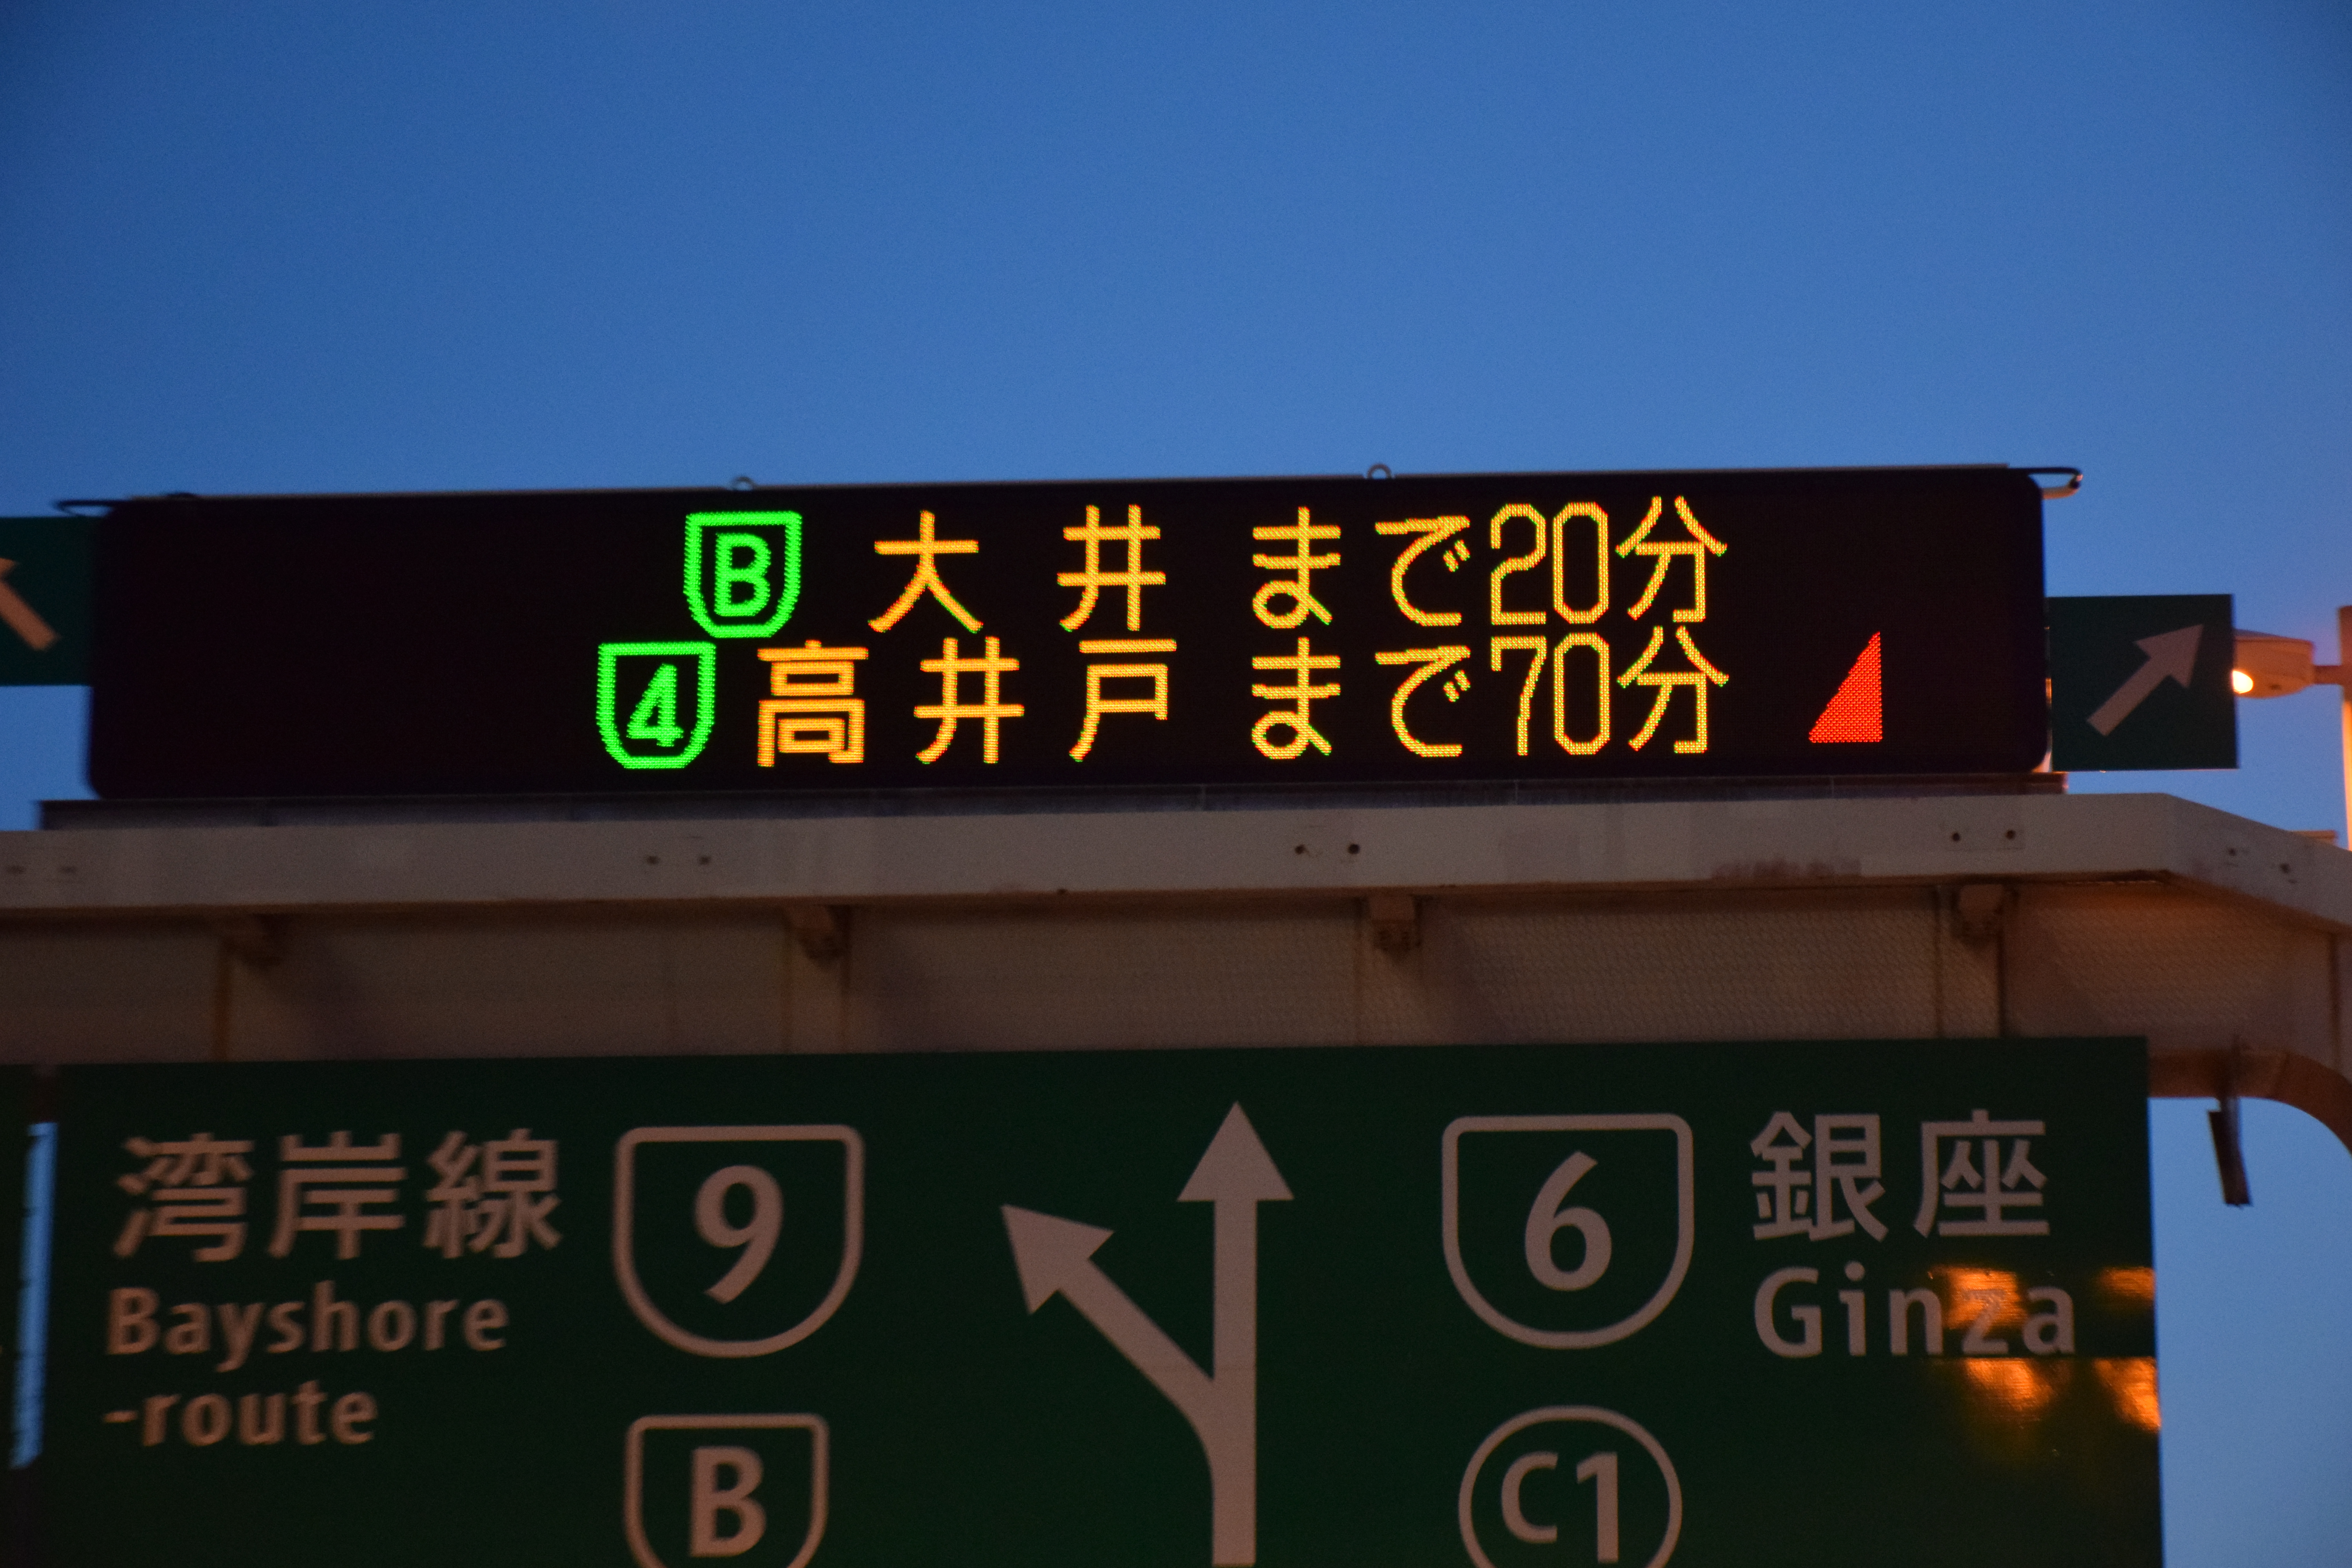 高速道路の電光掲示板で見かける「赤い三角マーク」は何を表しているのか 〜 画像2